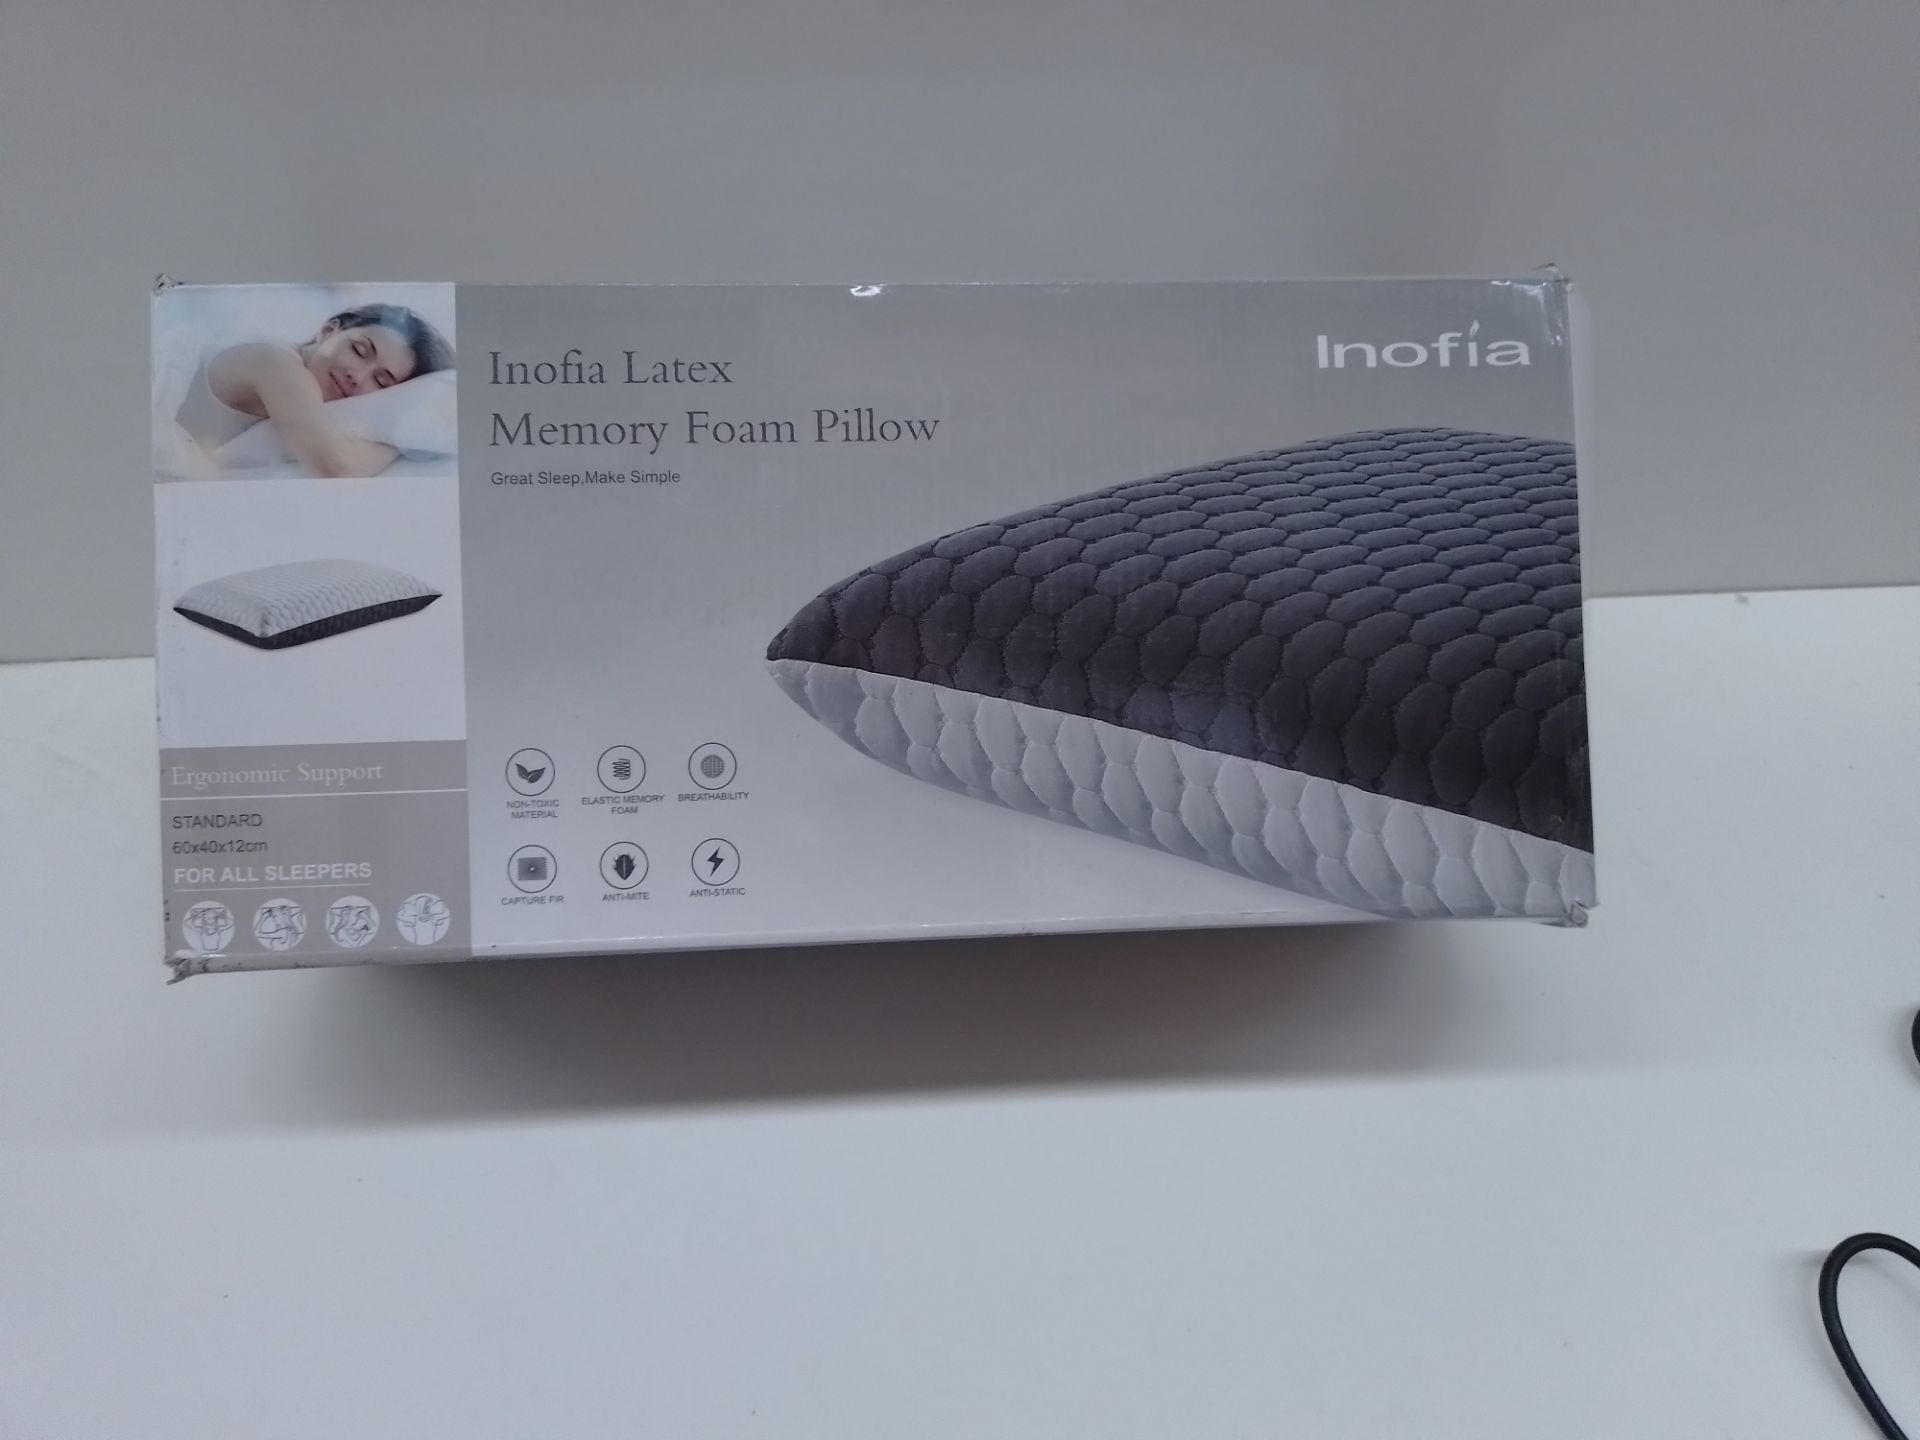 RRP £42.98 Inofia Latex Memory Foam Pillow - Image 2 of 2